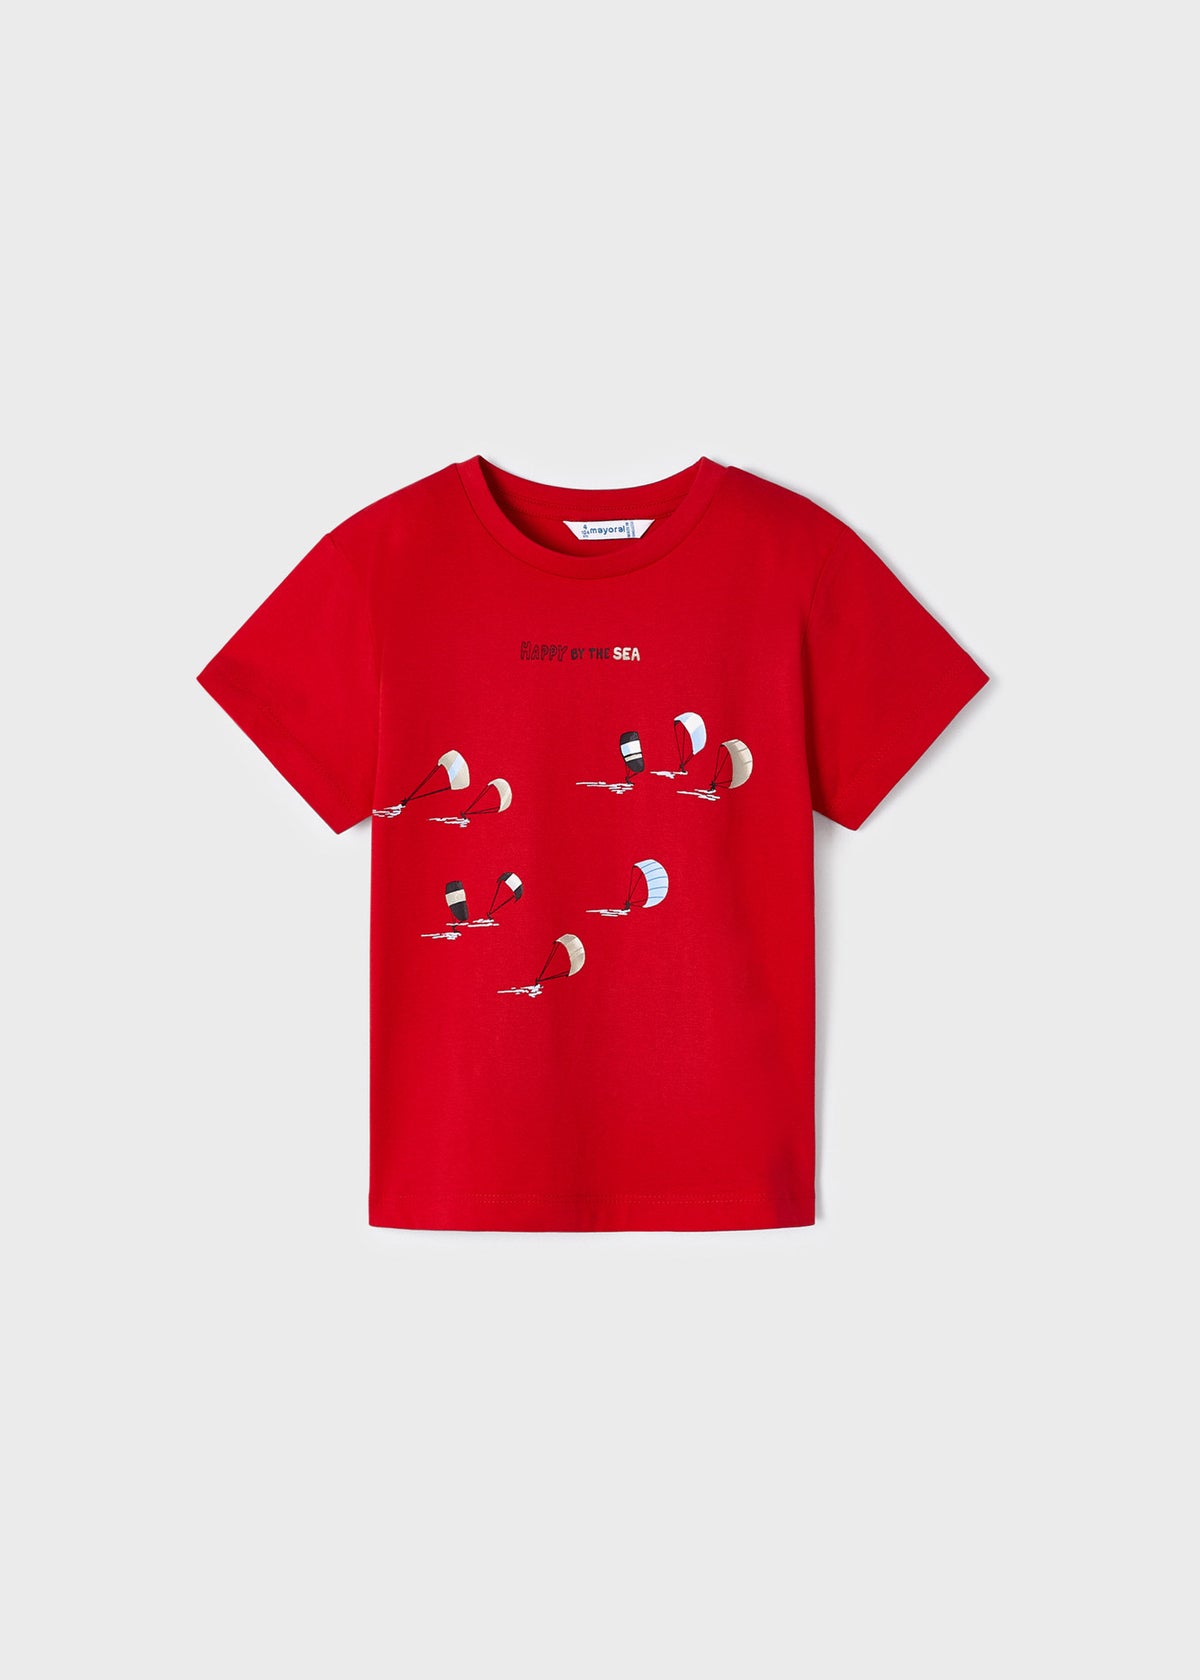 Jungen T-Shirt 2er Set 3022 Rojo Rot